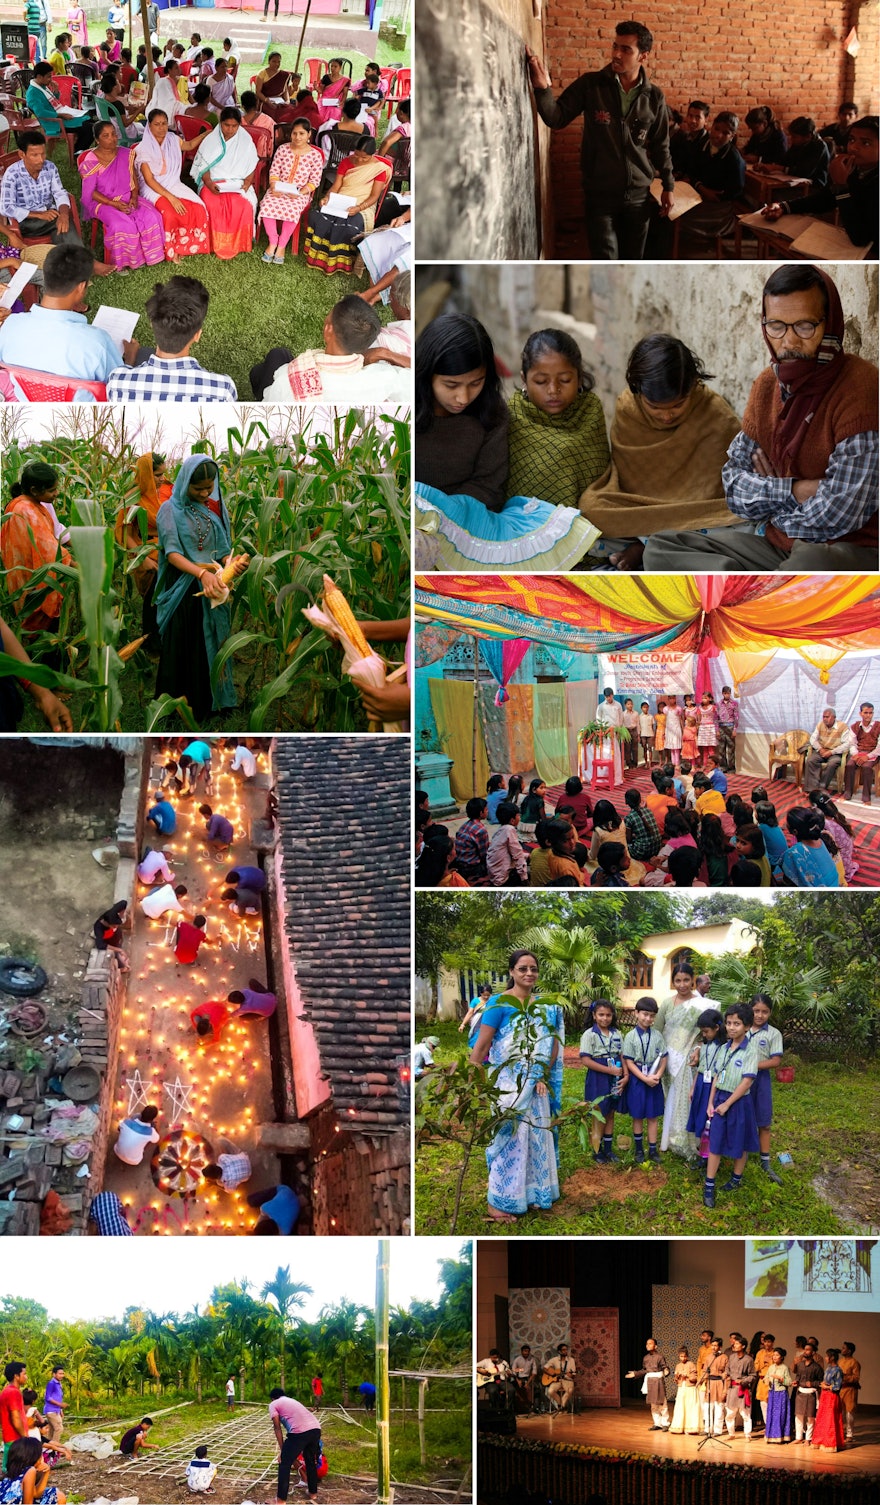 Фотографии деятельности бахаи по построению общины в Индии.